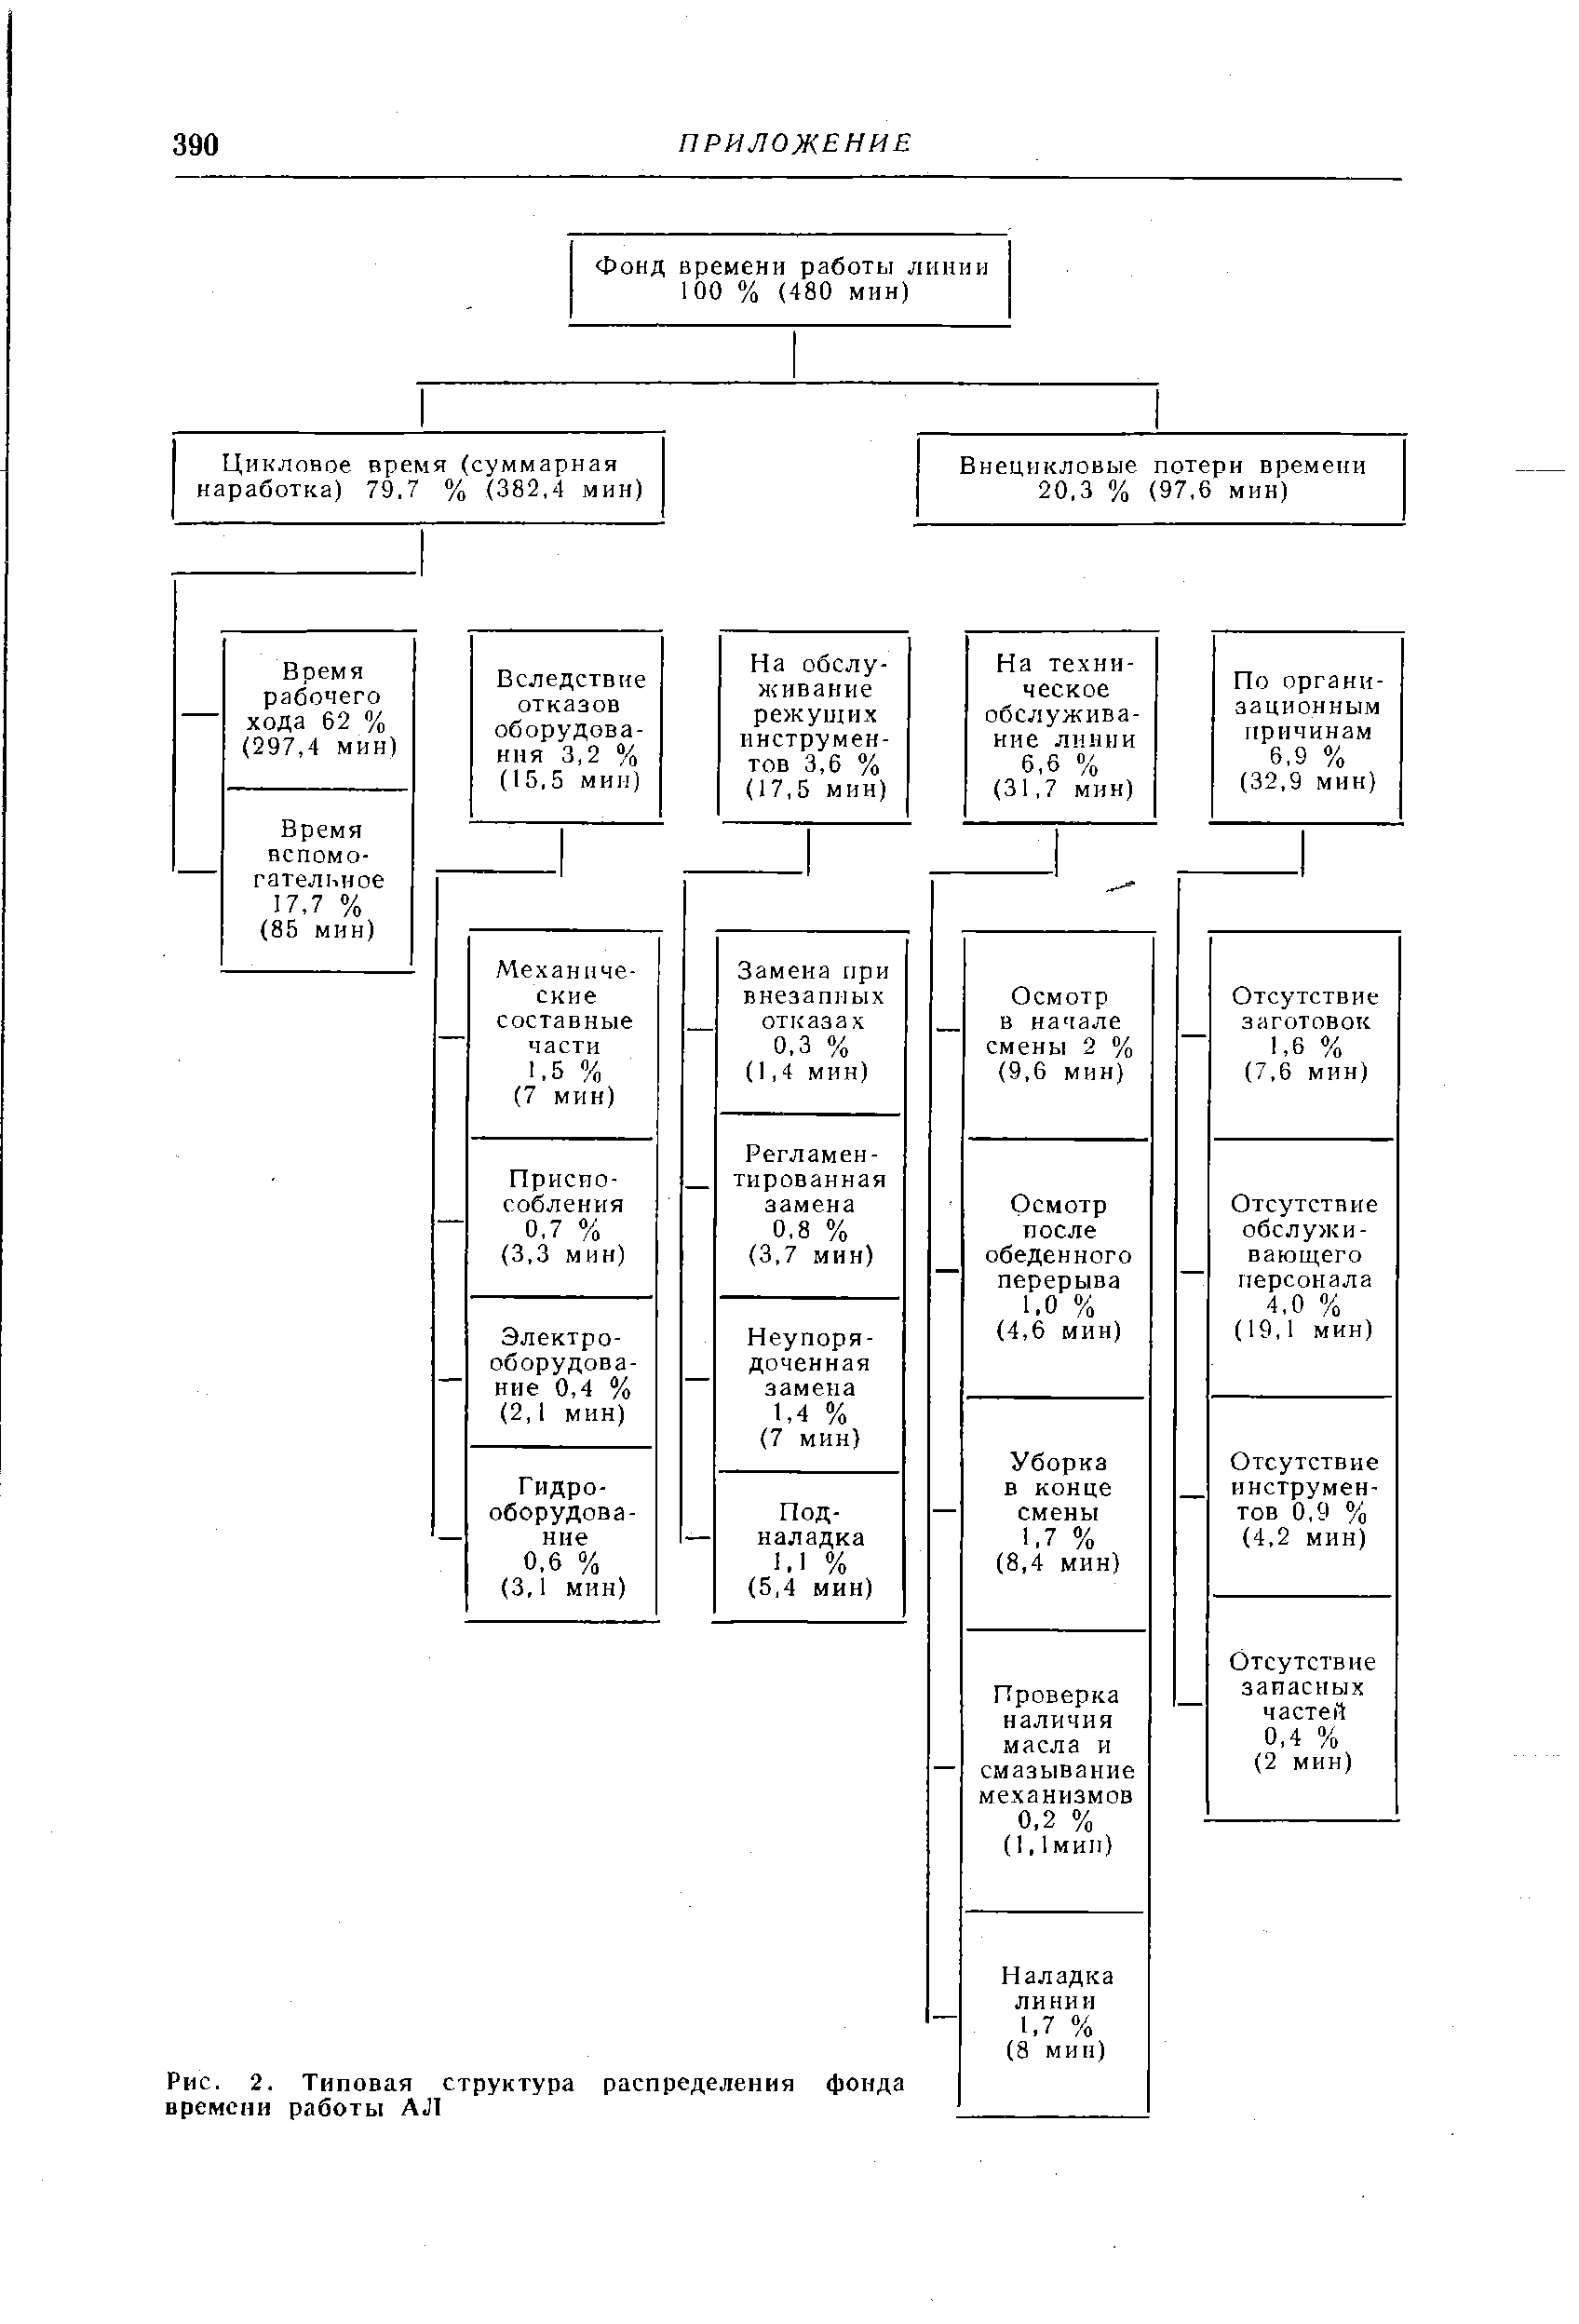 Рис. 2. Типовая структура распределения фонда времени работы АЛ
